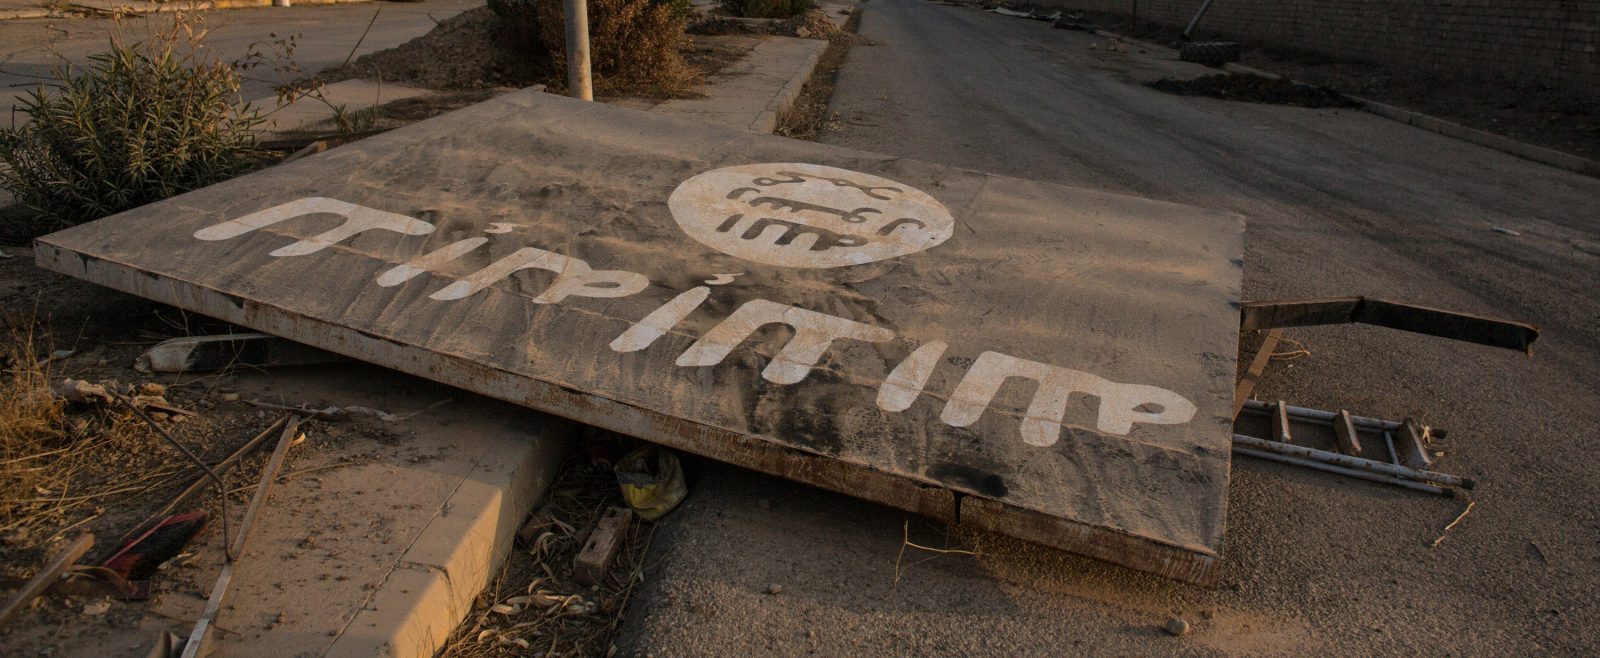 fallen billboard in Iraq